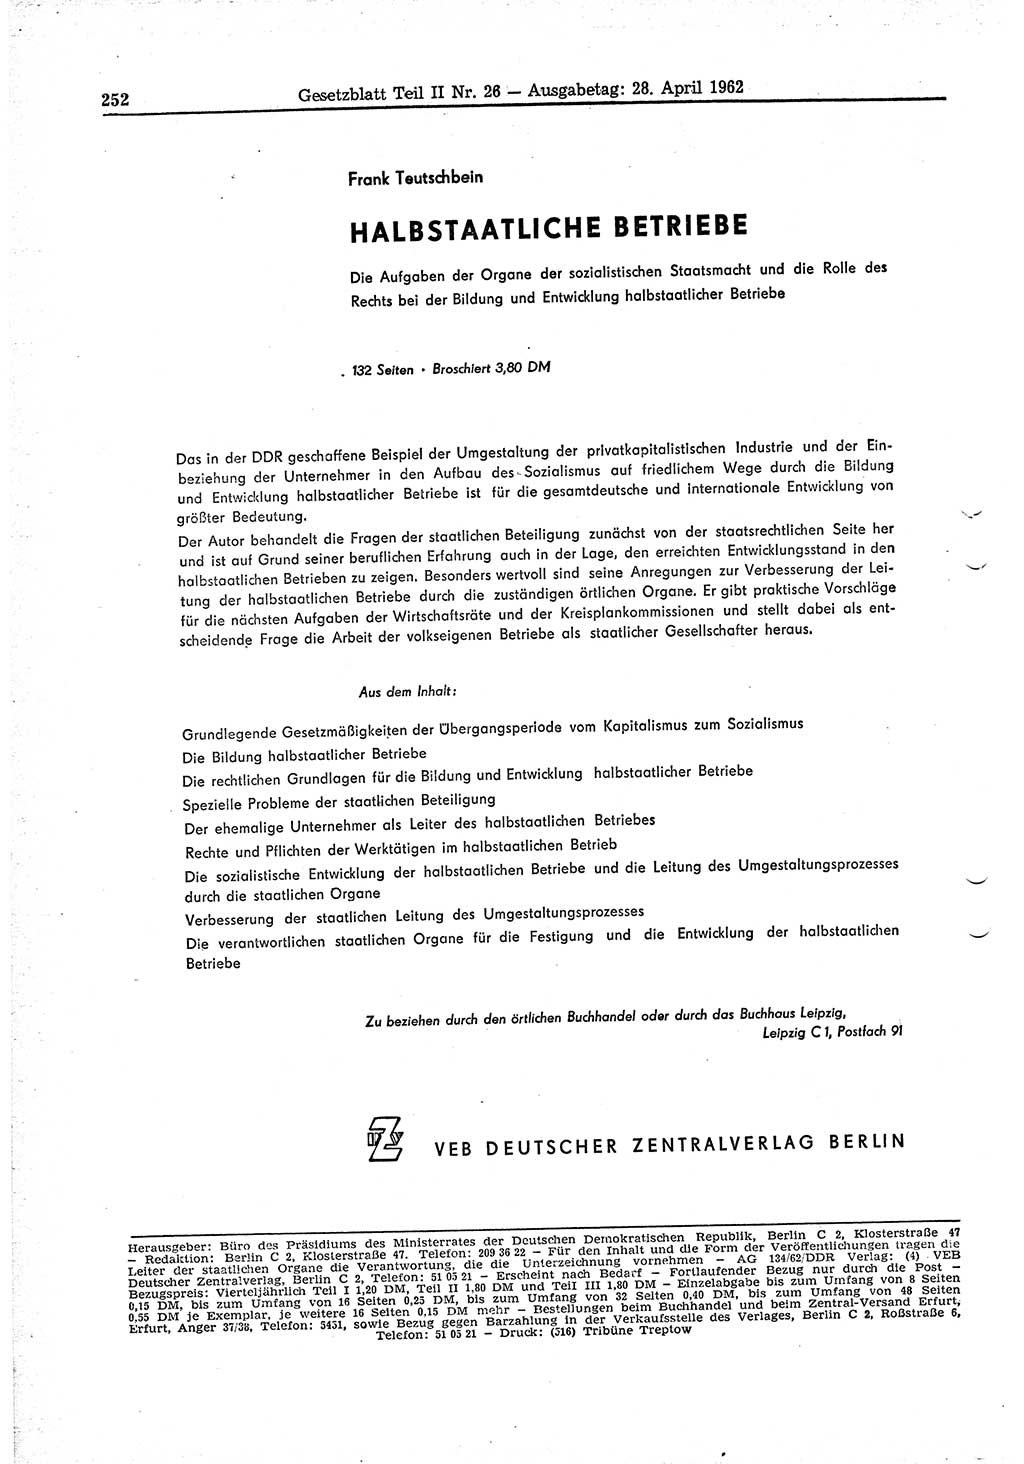 Gesetzblatt (GBl.) der Deutschen Demokratischen Republik (DDR) Teil ⅠⅠ 1962, Seite 252 (GBl. DDR ⅠⅠ 1962, S. 252)